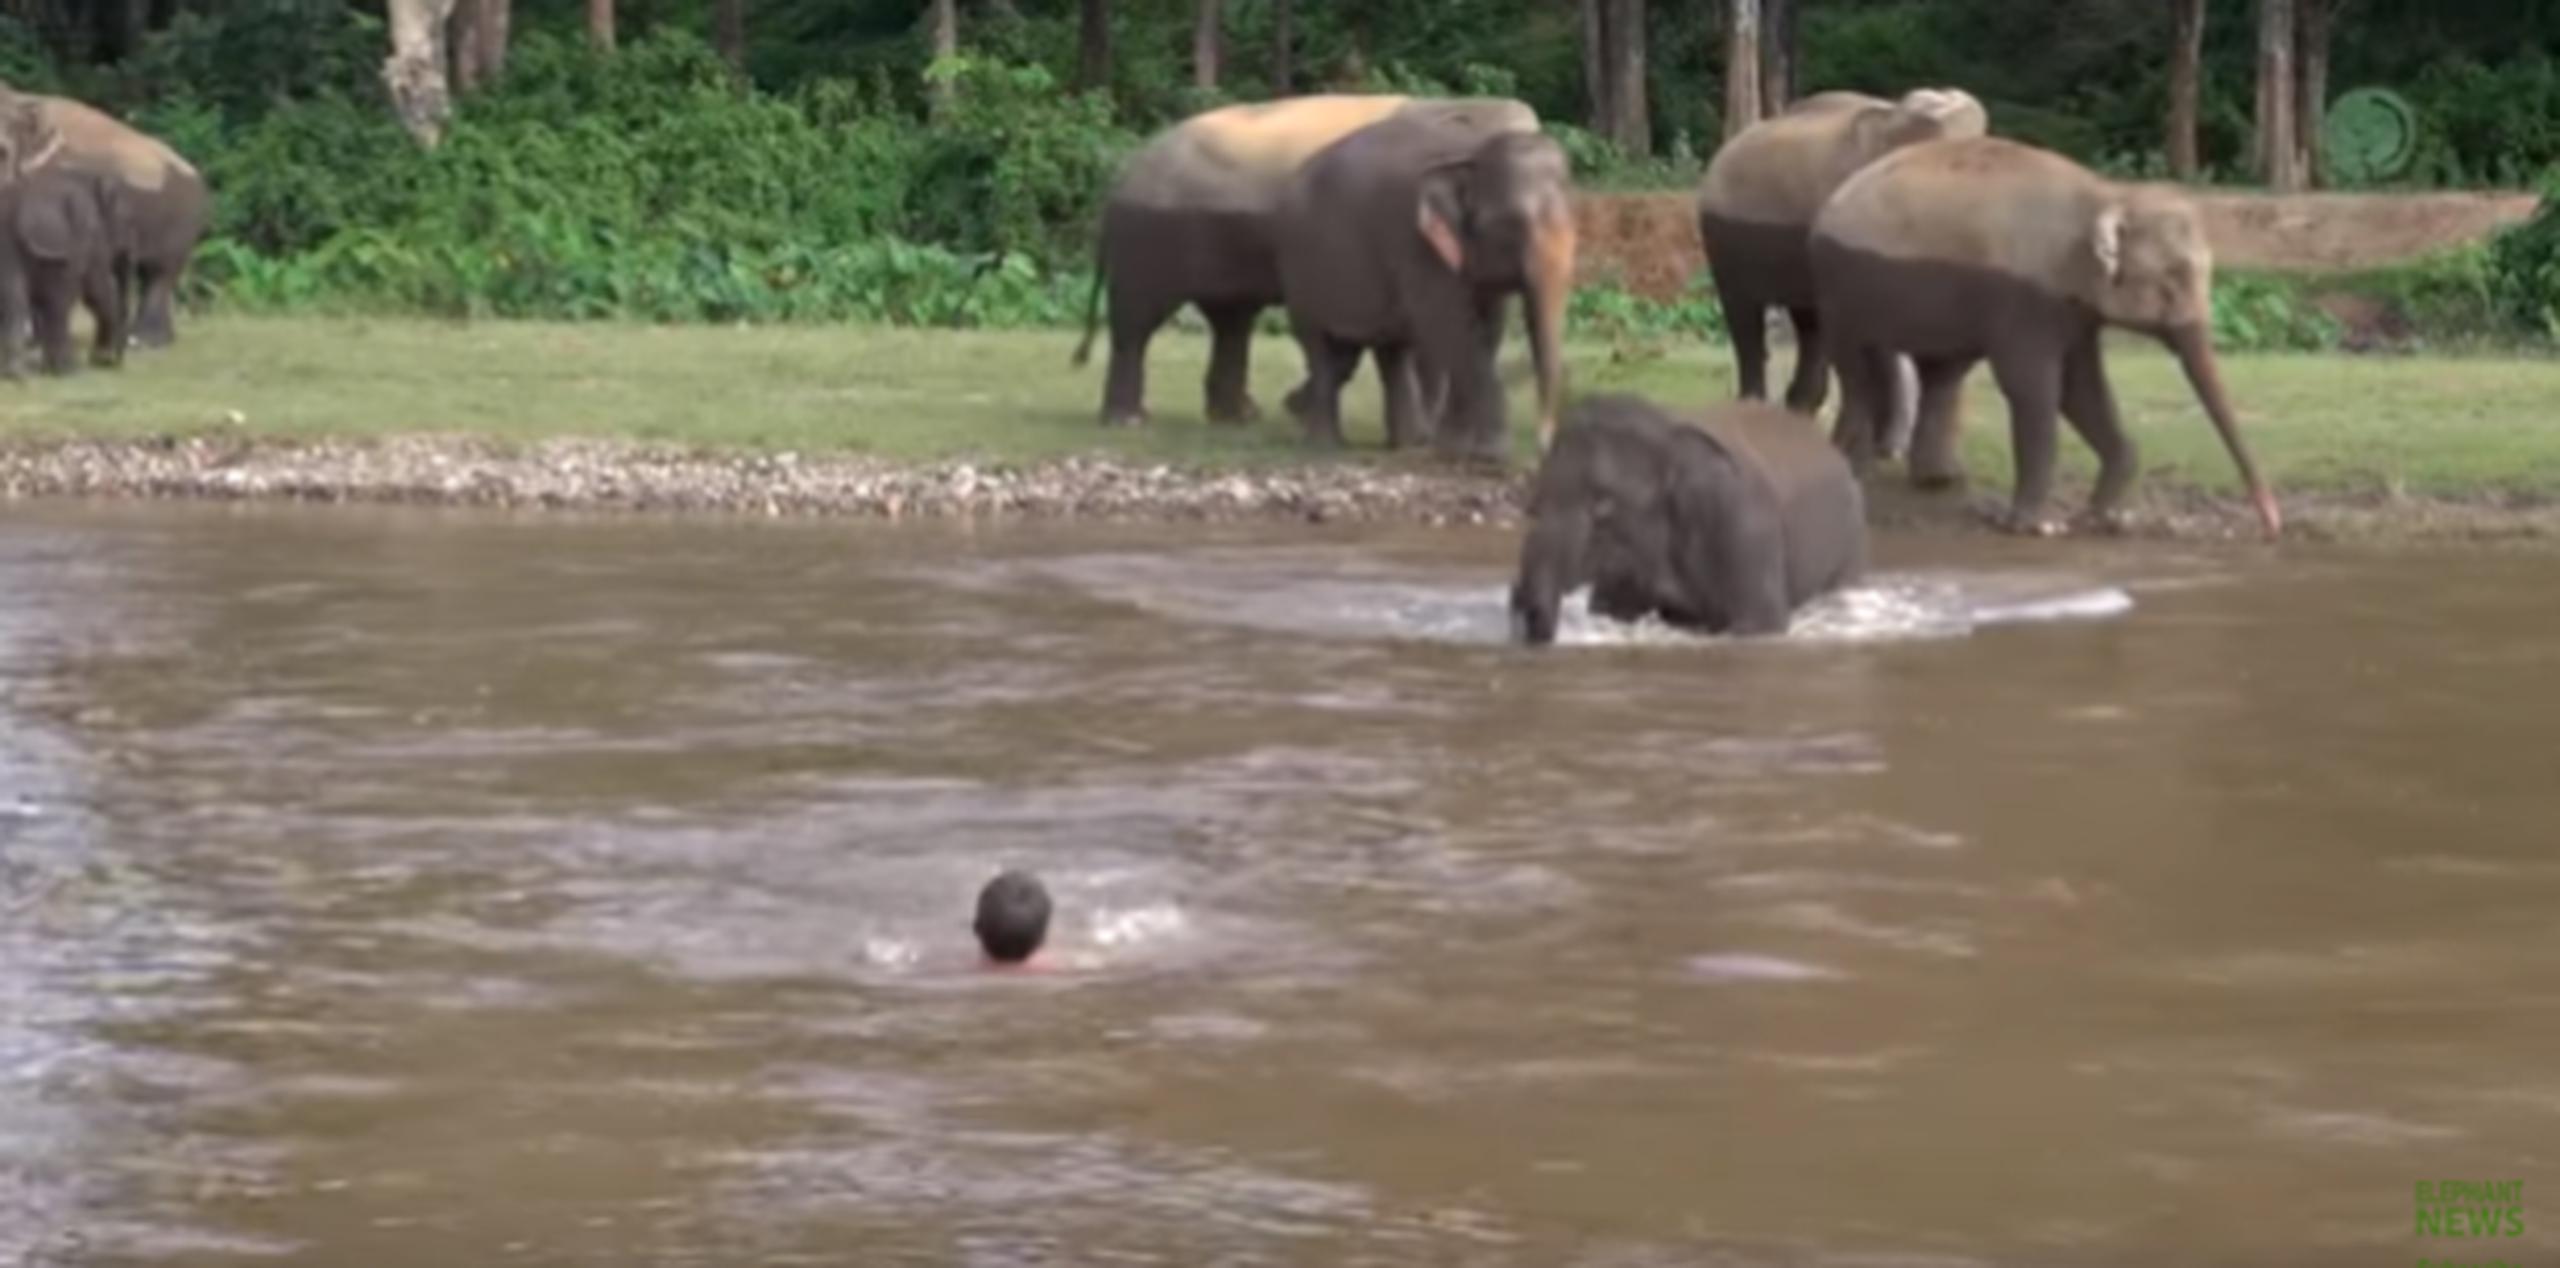 El momento fue grabado en el Elephant Nature Park, en Tailandia. (YouTube)